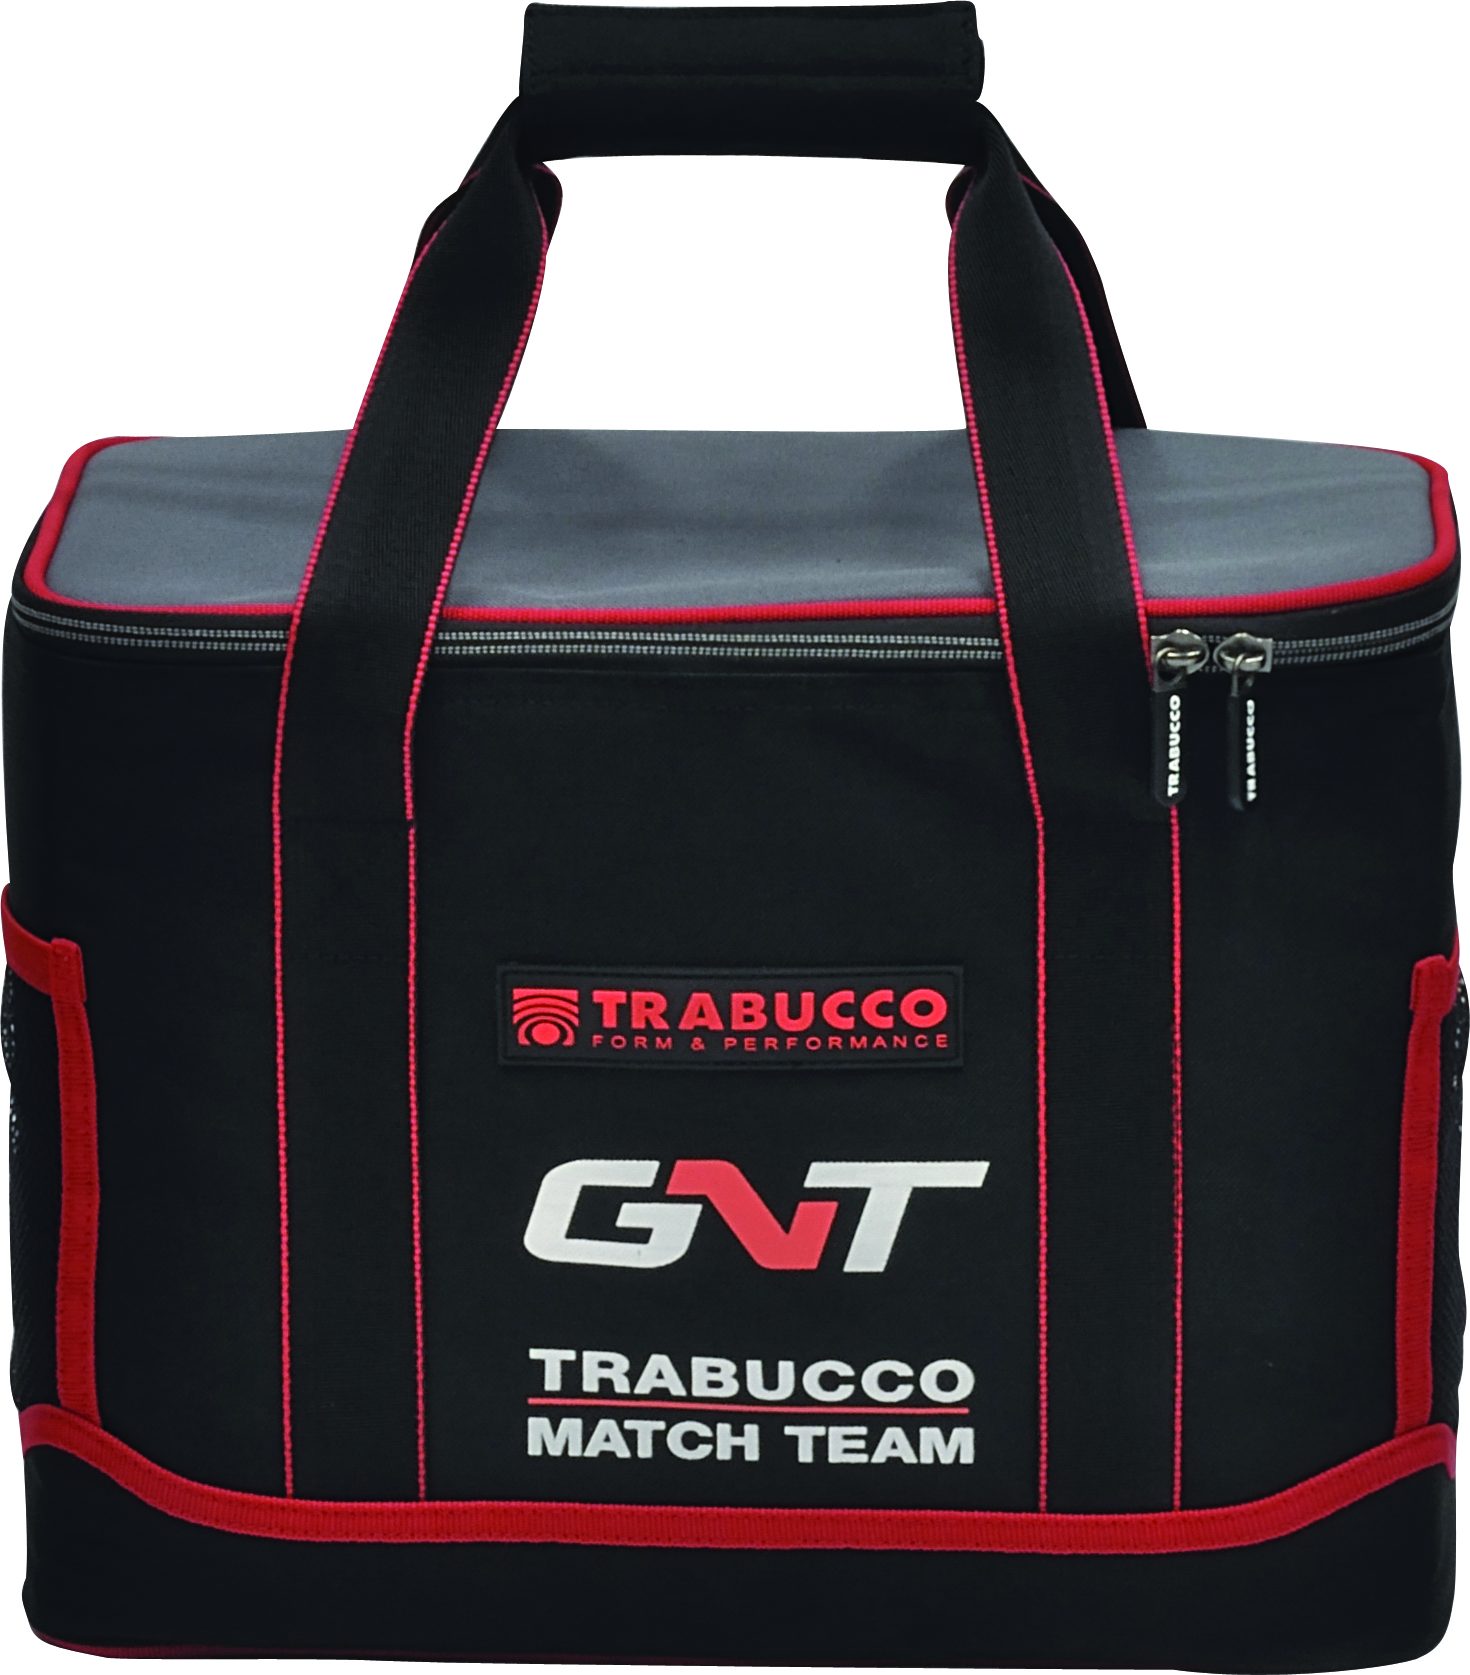 Trabucco Gnt Match Team Trolley Bag 